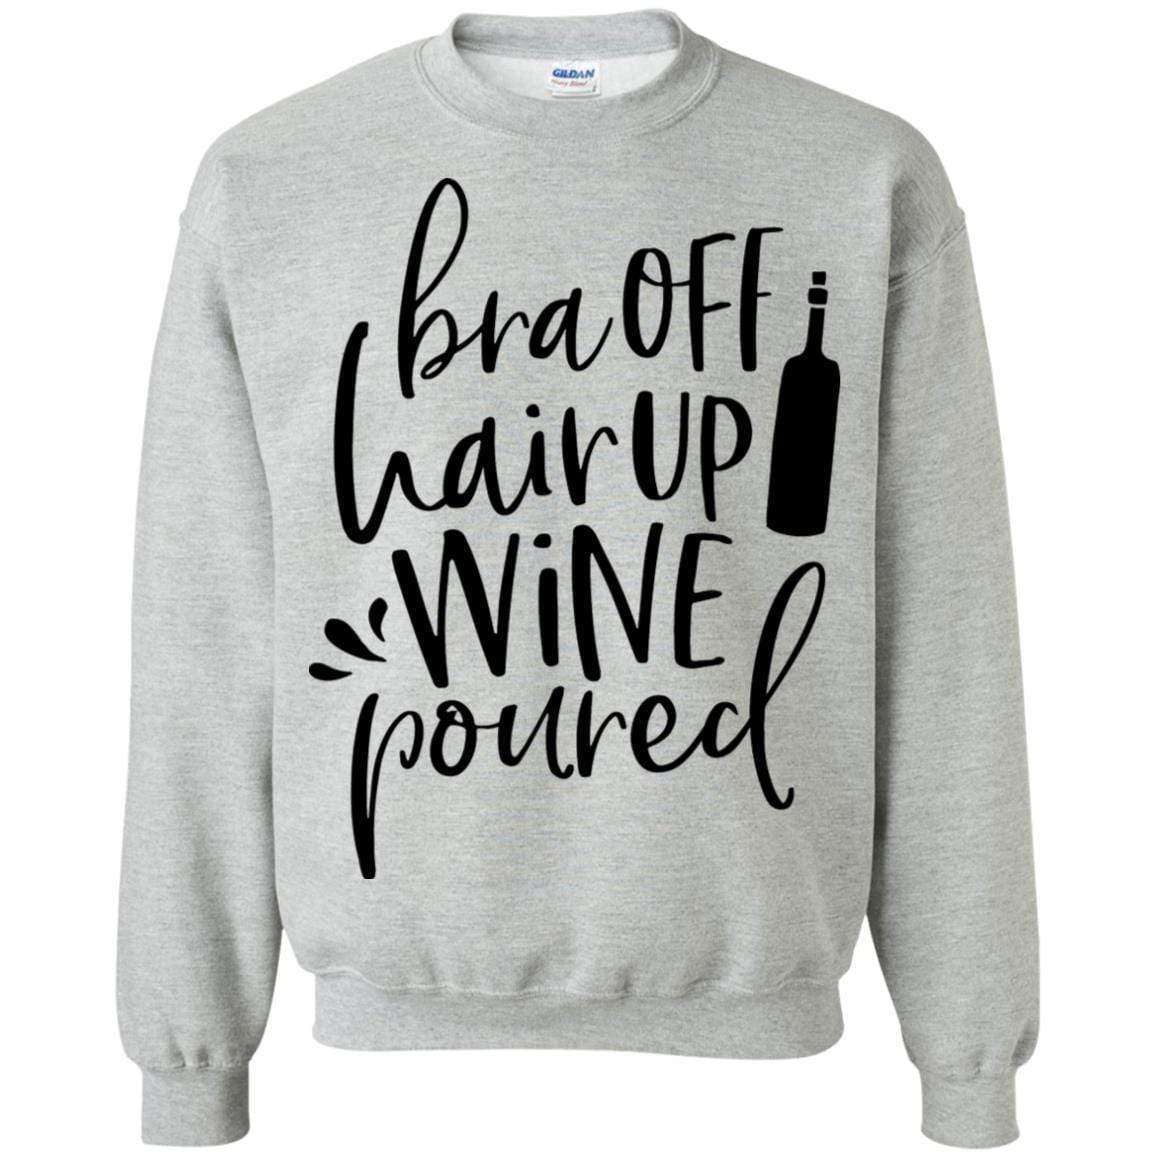 Sweatshirts Sport Grey / S WineyBitches.Co Bra Off Hair Up Wine Poured Crewneck Pullover Sweatshirt  8 oz. (Blk Lettering) WineyBitchesCo